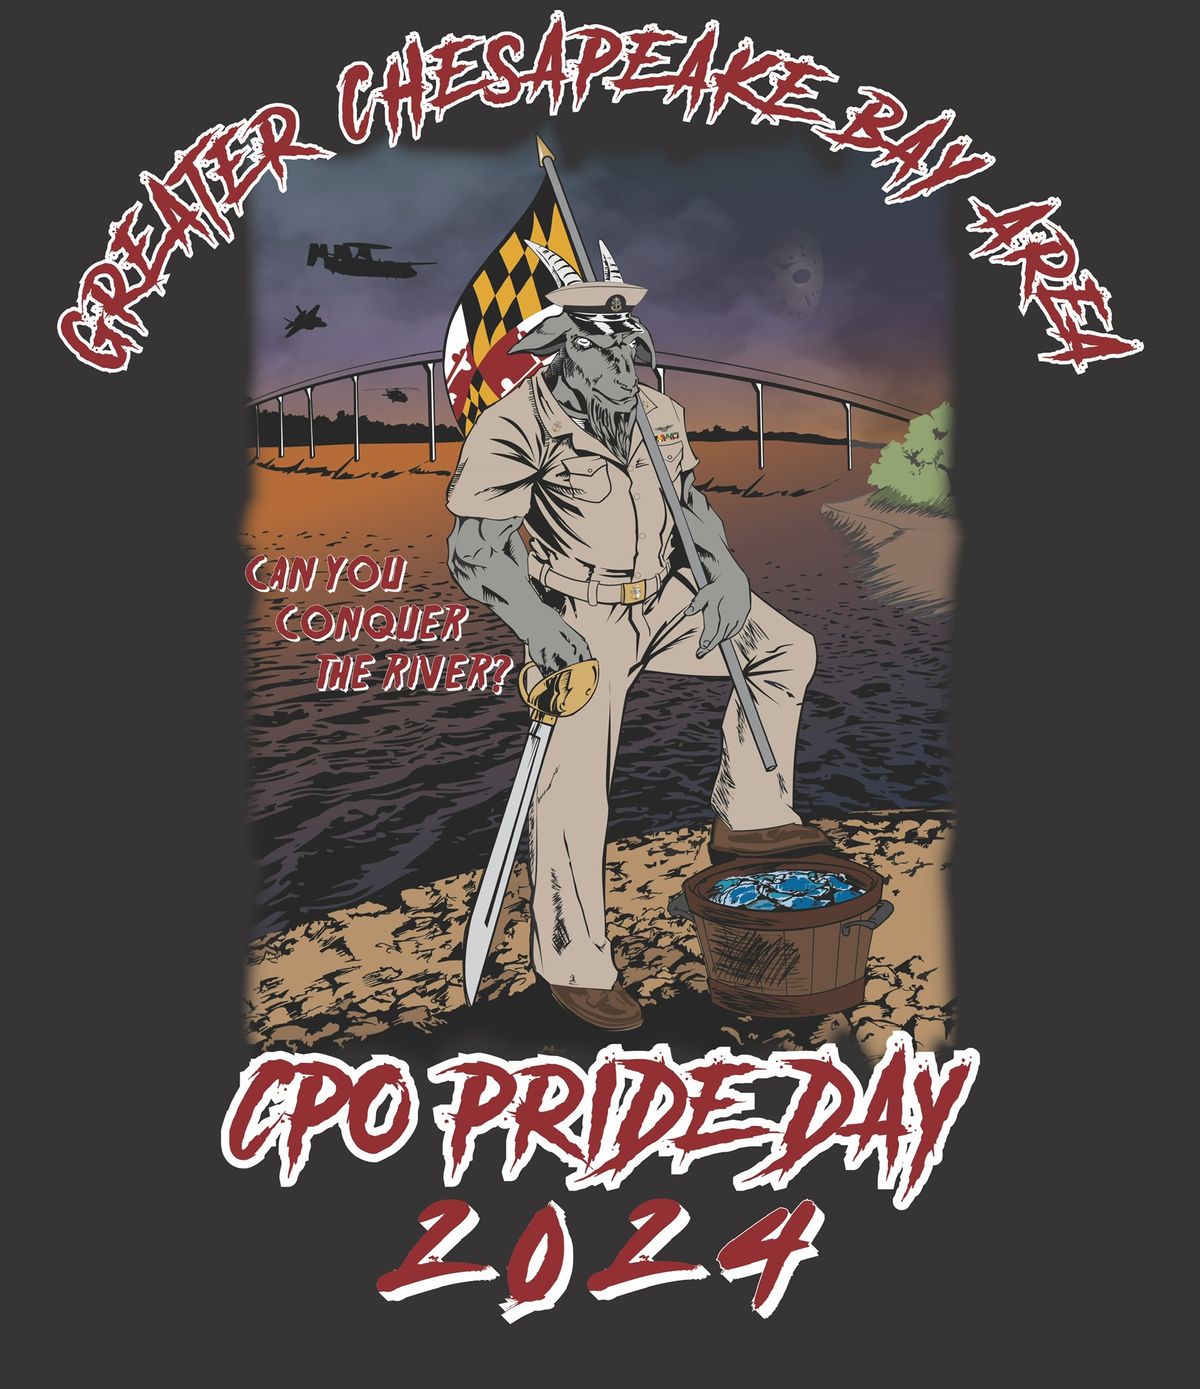 \u201cConquer The River \u201c- FY25 CPO Pride Day Event